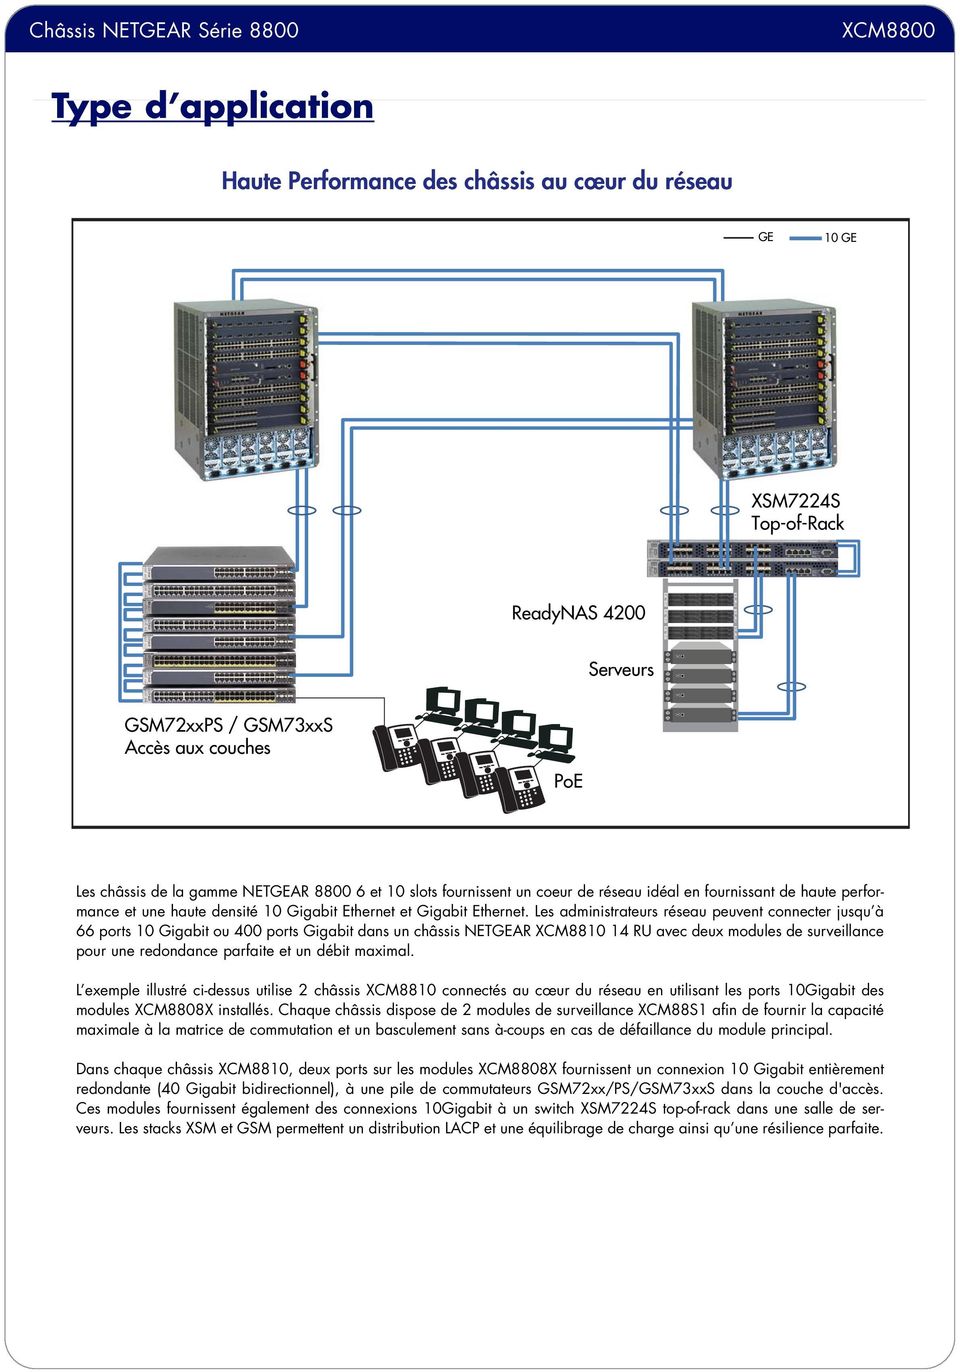 Les administrateurs réseau peuvent connecter jusqu à 66 ports 10 Gigabit ou 400 ports Gigabit dans un châssis NETGEAR XCM8810 14 RU avec deux modules de surveillance pour une redondance parfaite et